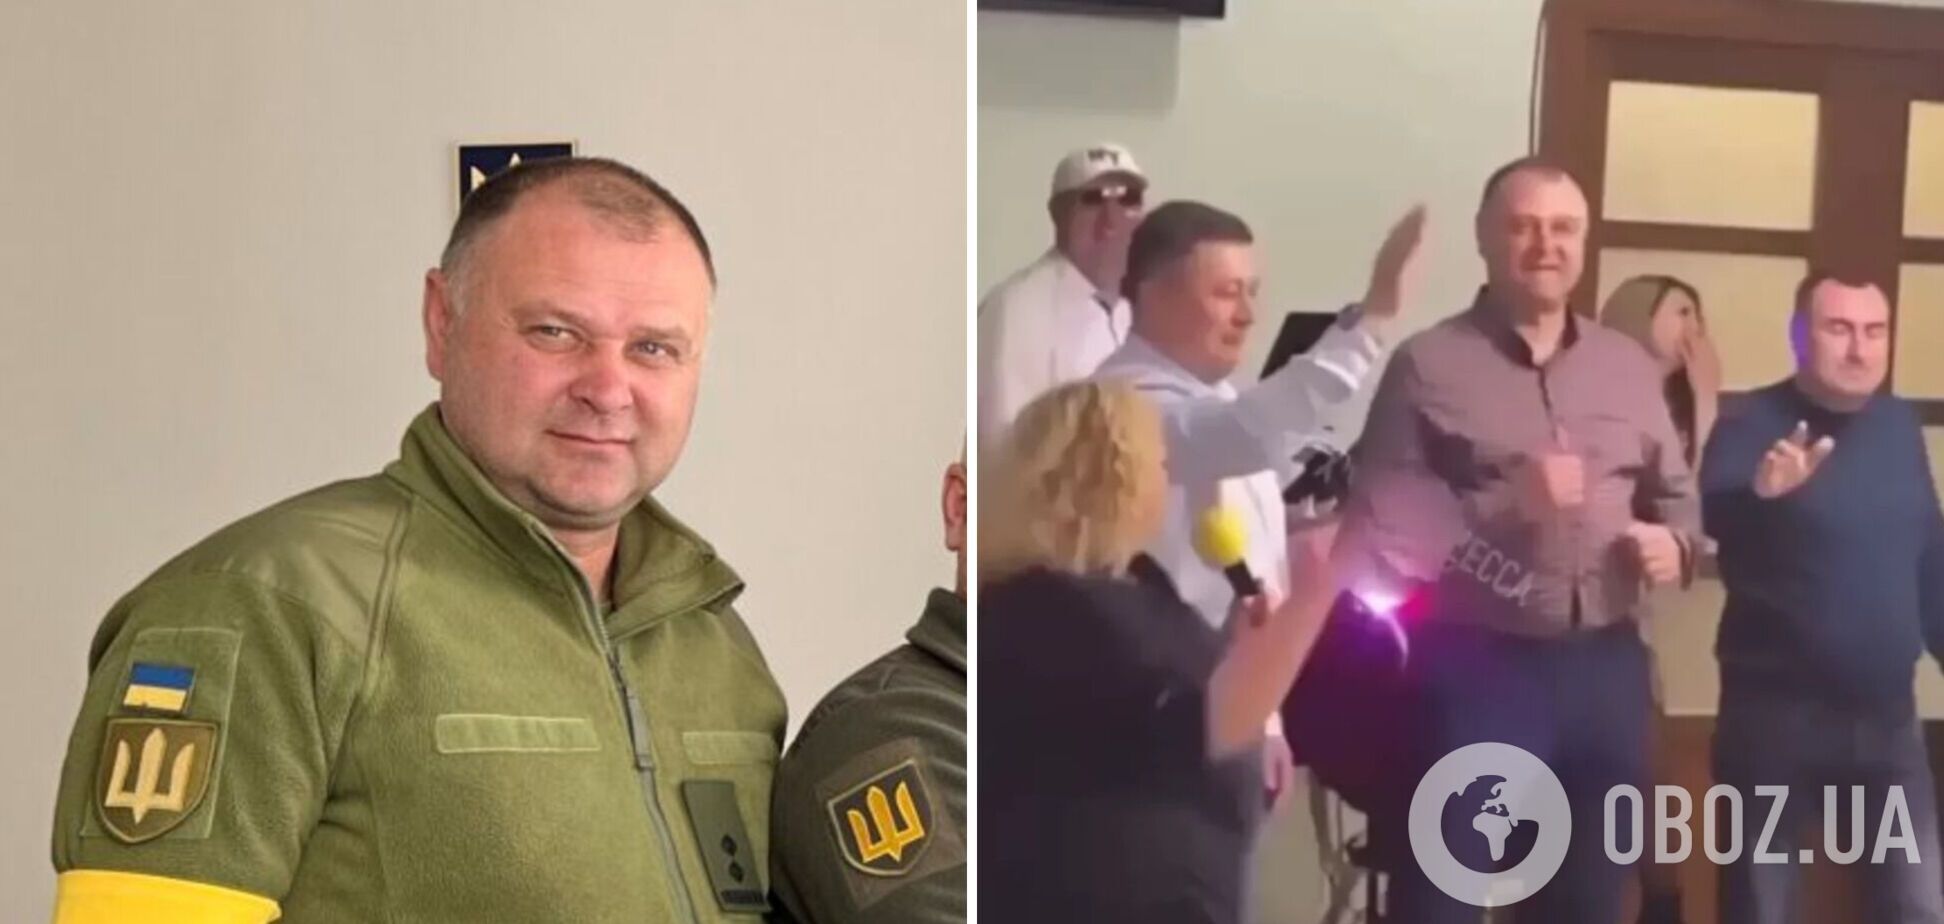 Скандал с работником военкомата на Одесщине, который 'зажигал' под 'Алкоголичку', получил продолжение